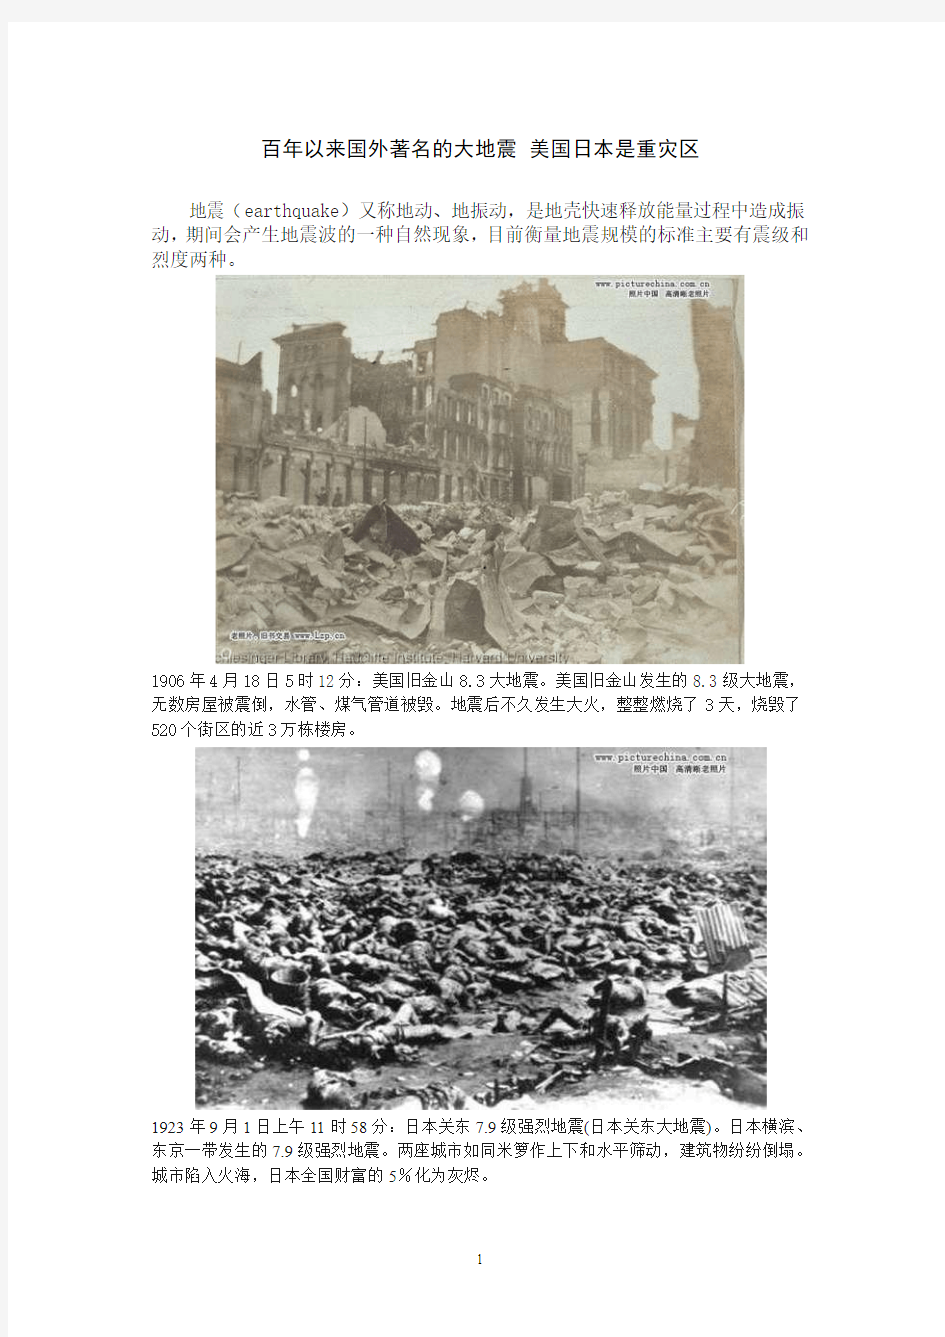 百年以来国外著名的大地震 美国日本是重灾区